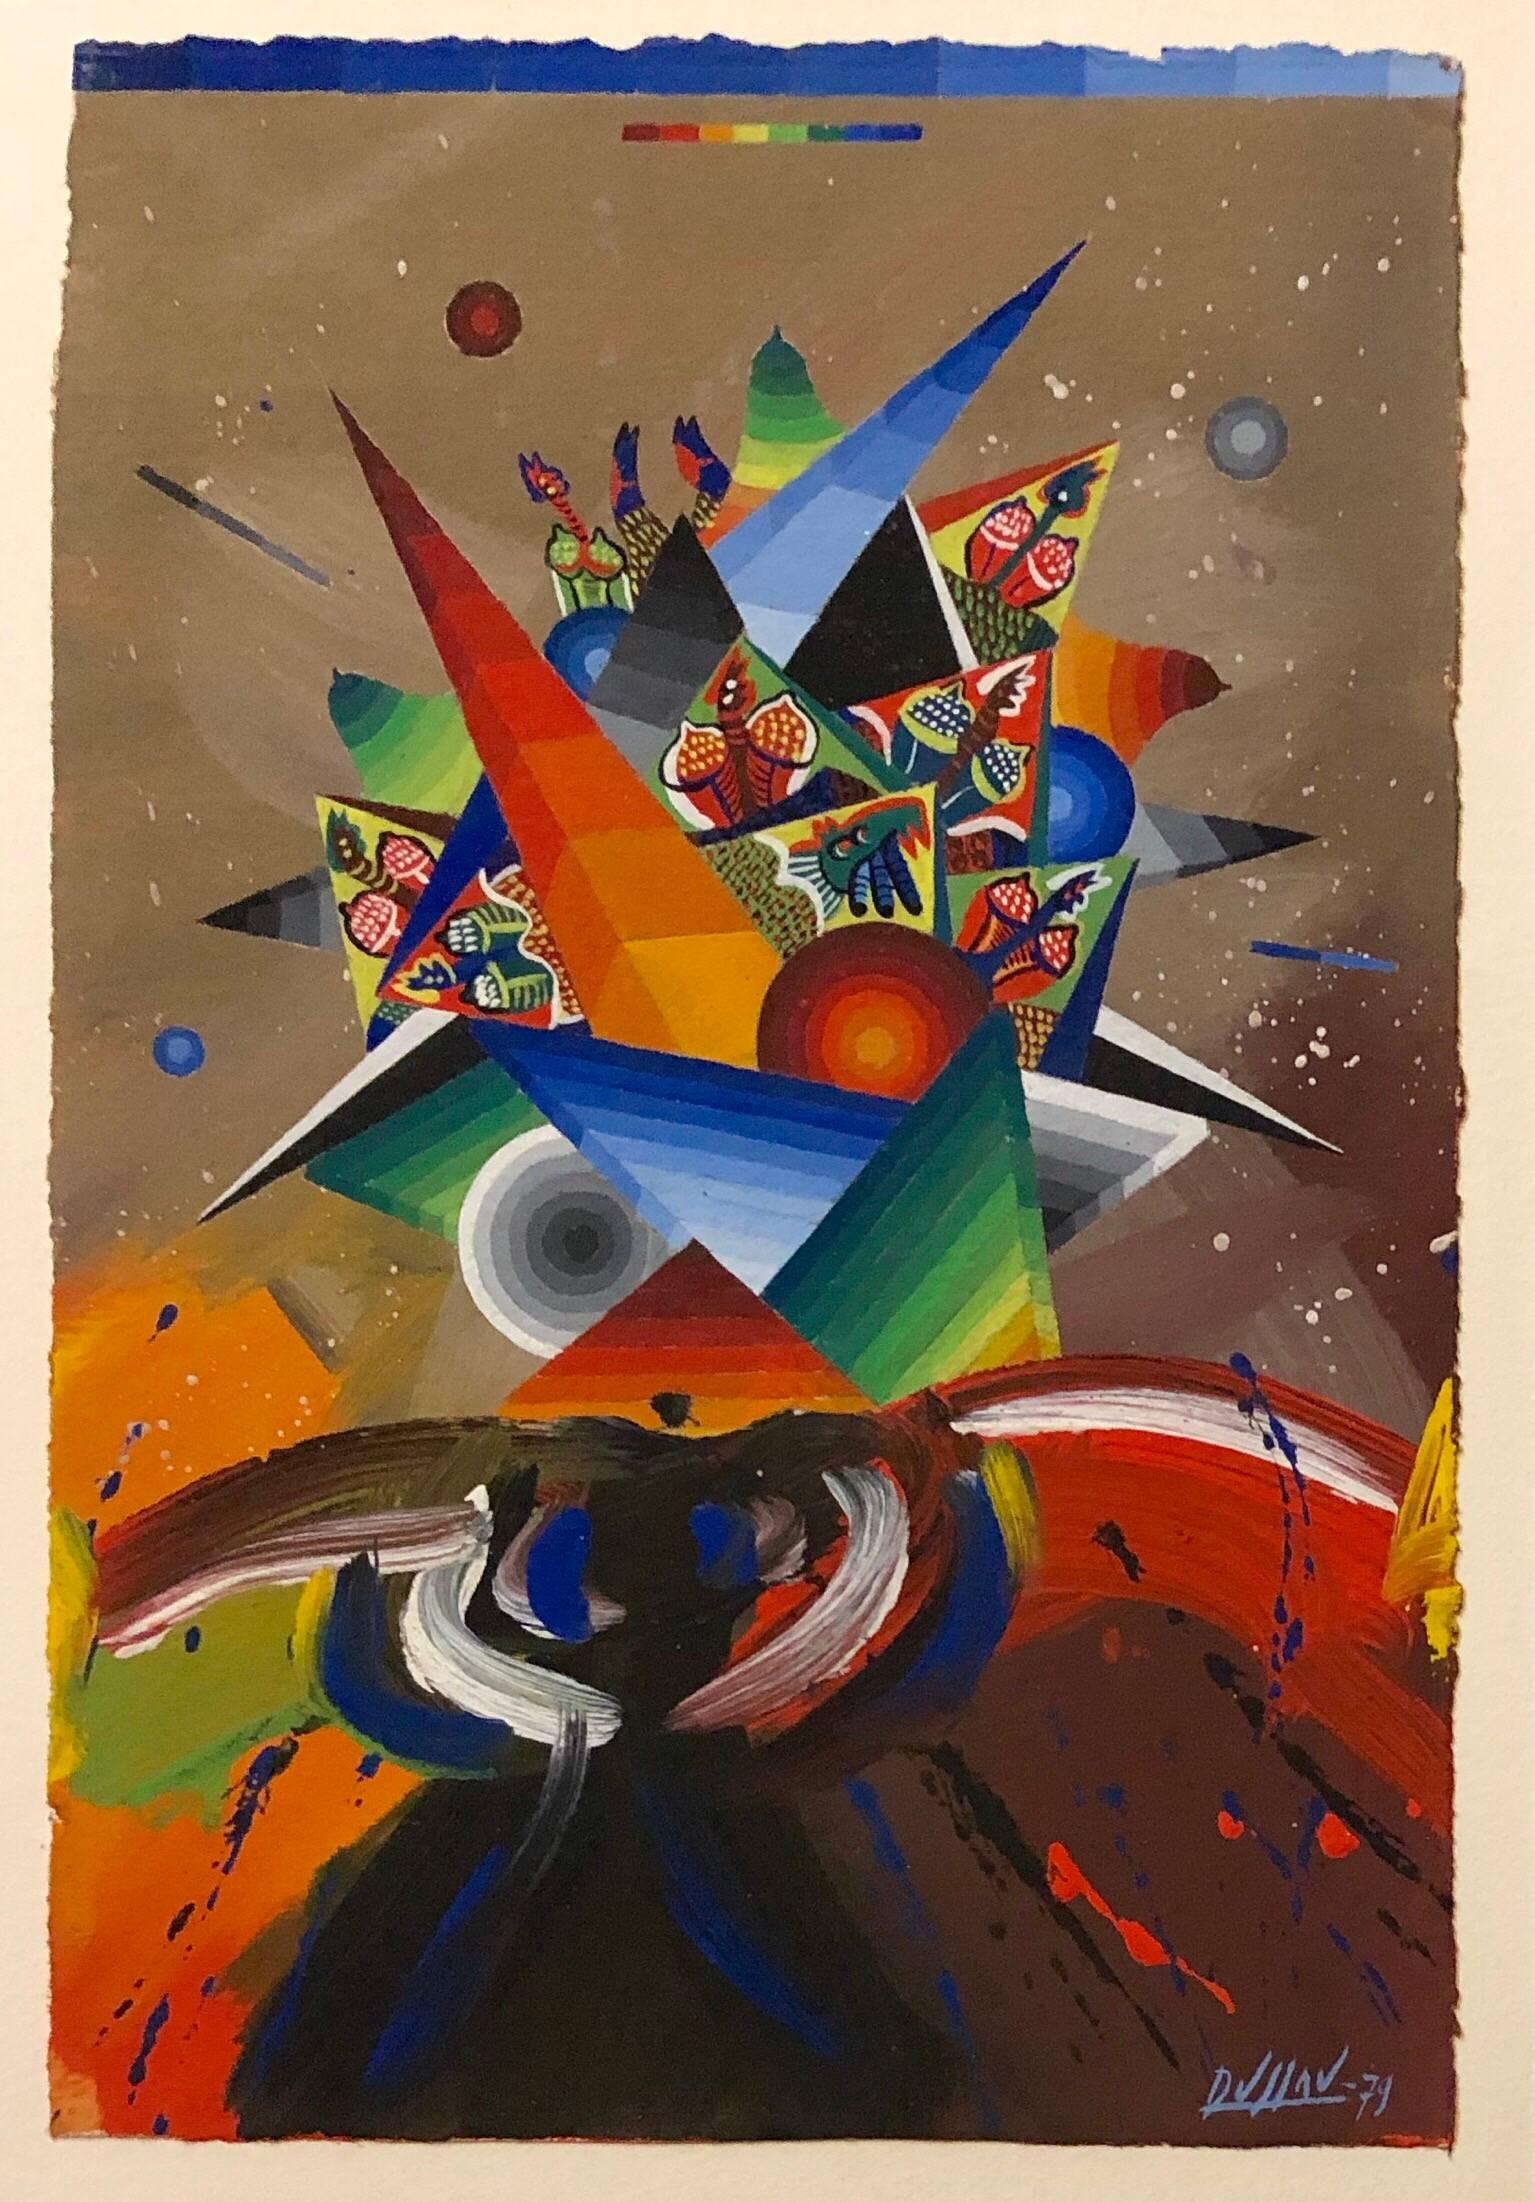 Composition de peinture abstraite surréaliste française colorée et futuriste en forme de V